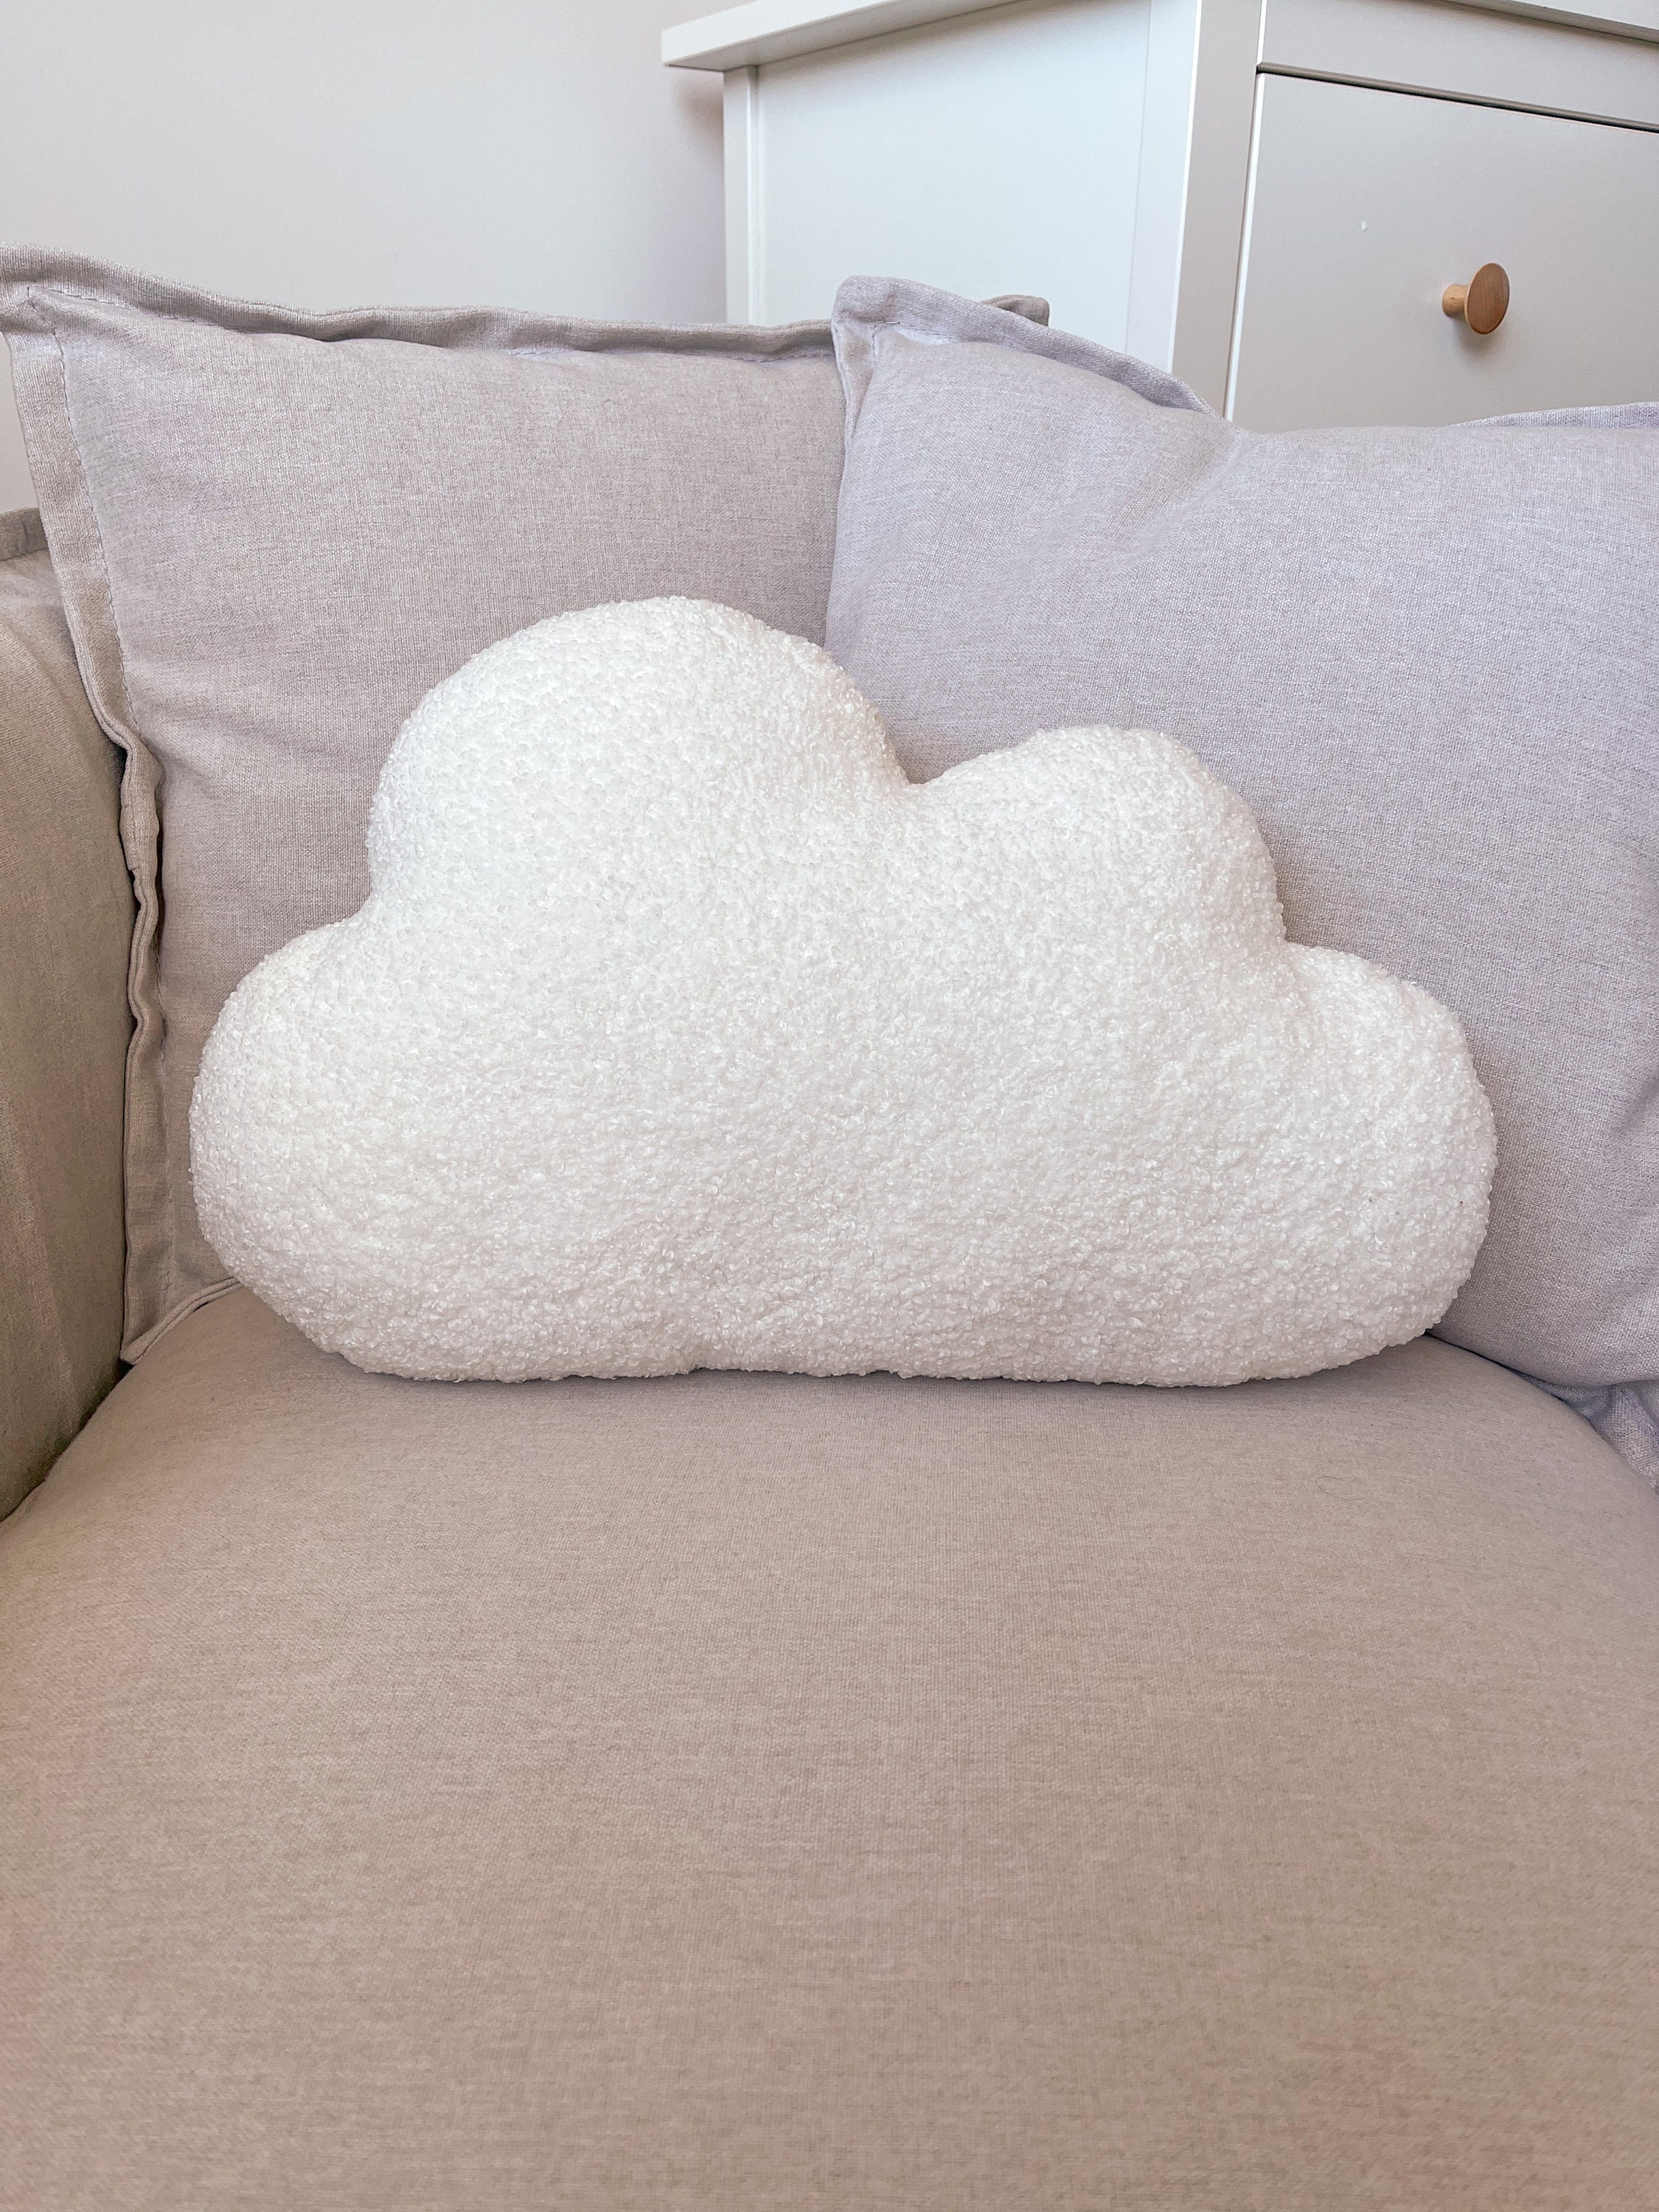 Blue Cloud Pillow, Cloud Cushion, Cloud Toy Pillow, Decorative Pillow,  Nursery Accessories, Throw Pillow, Kids Pillow, Kindergarten Decor 